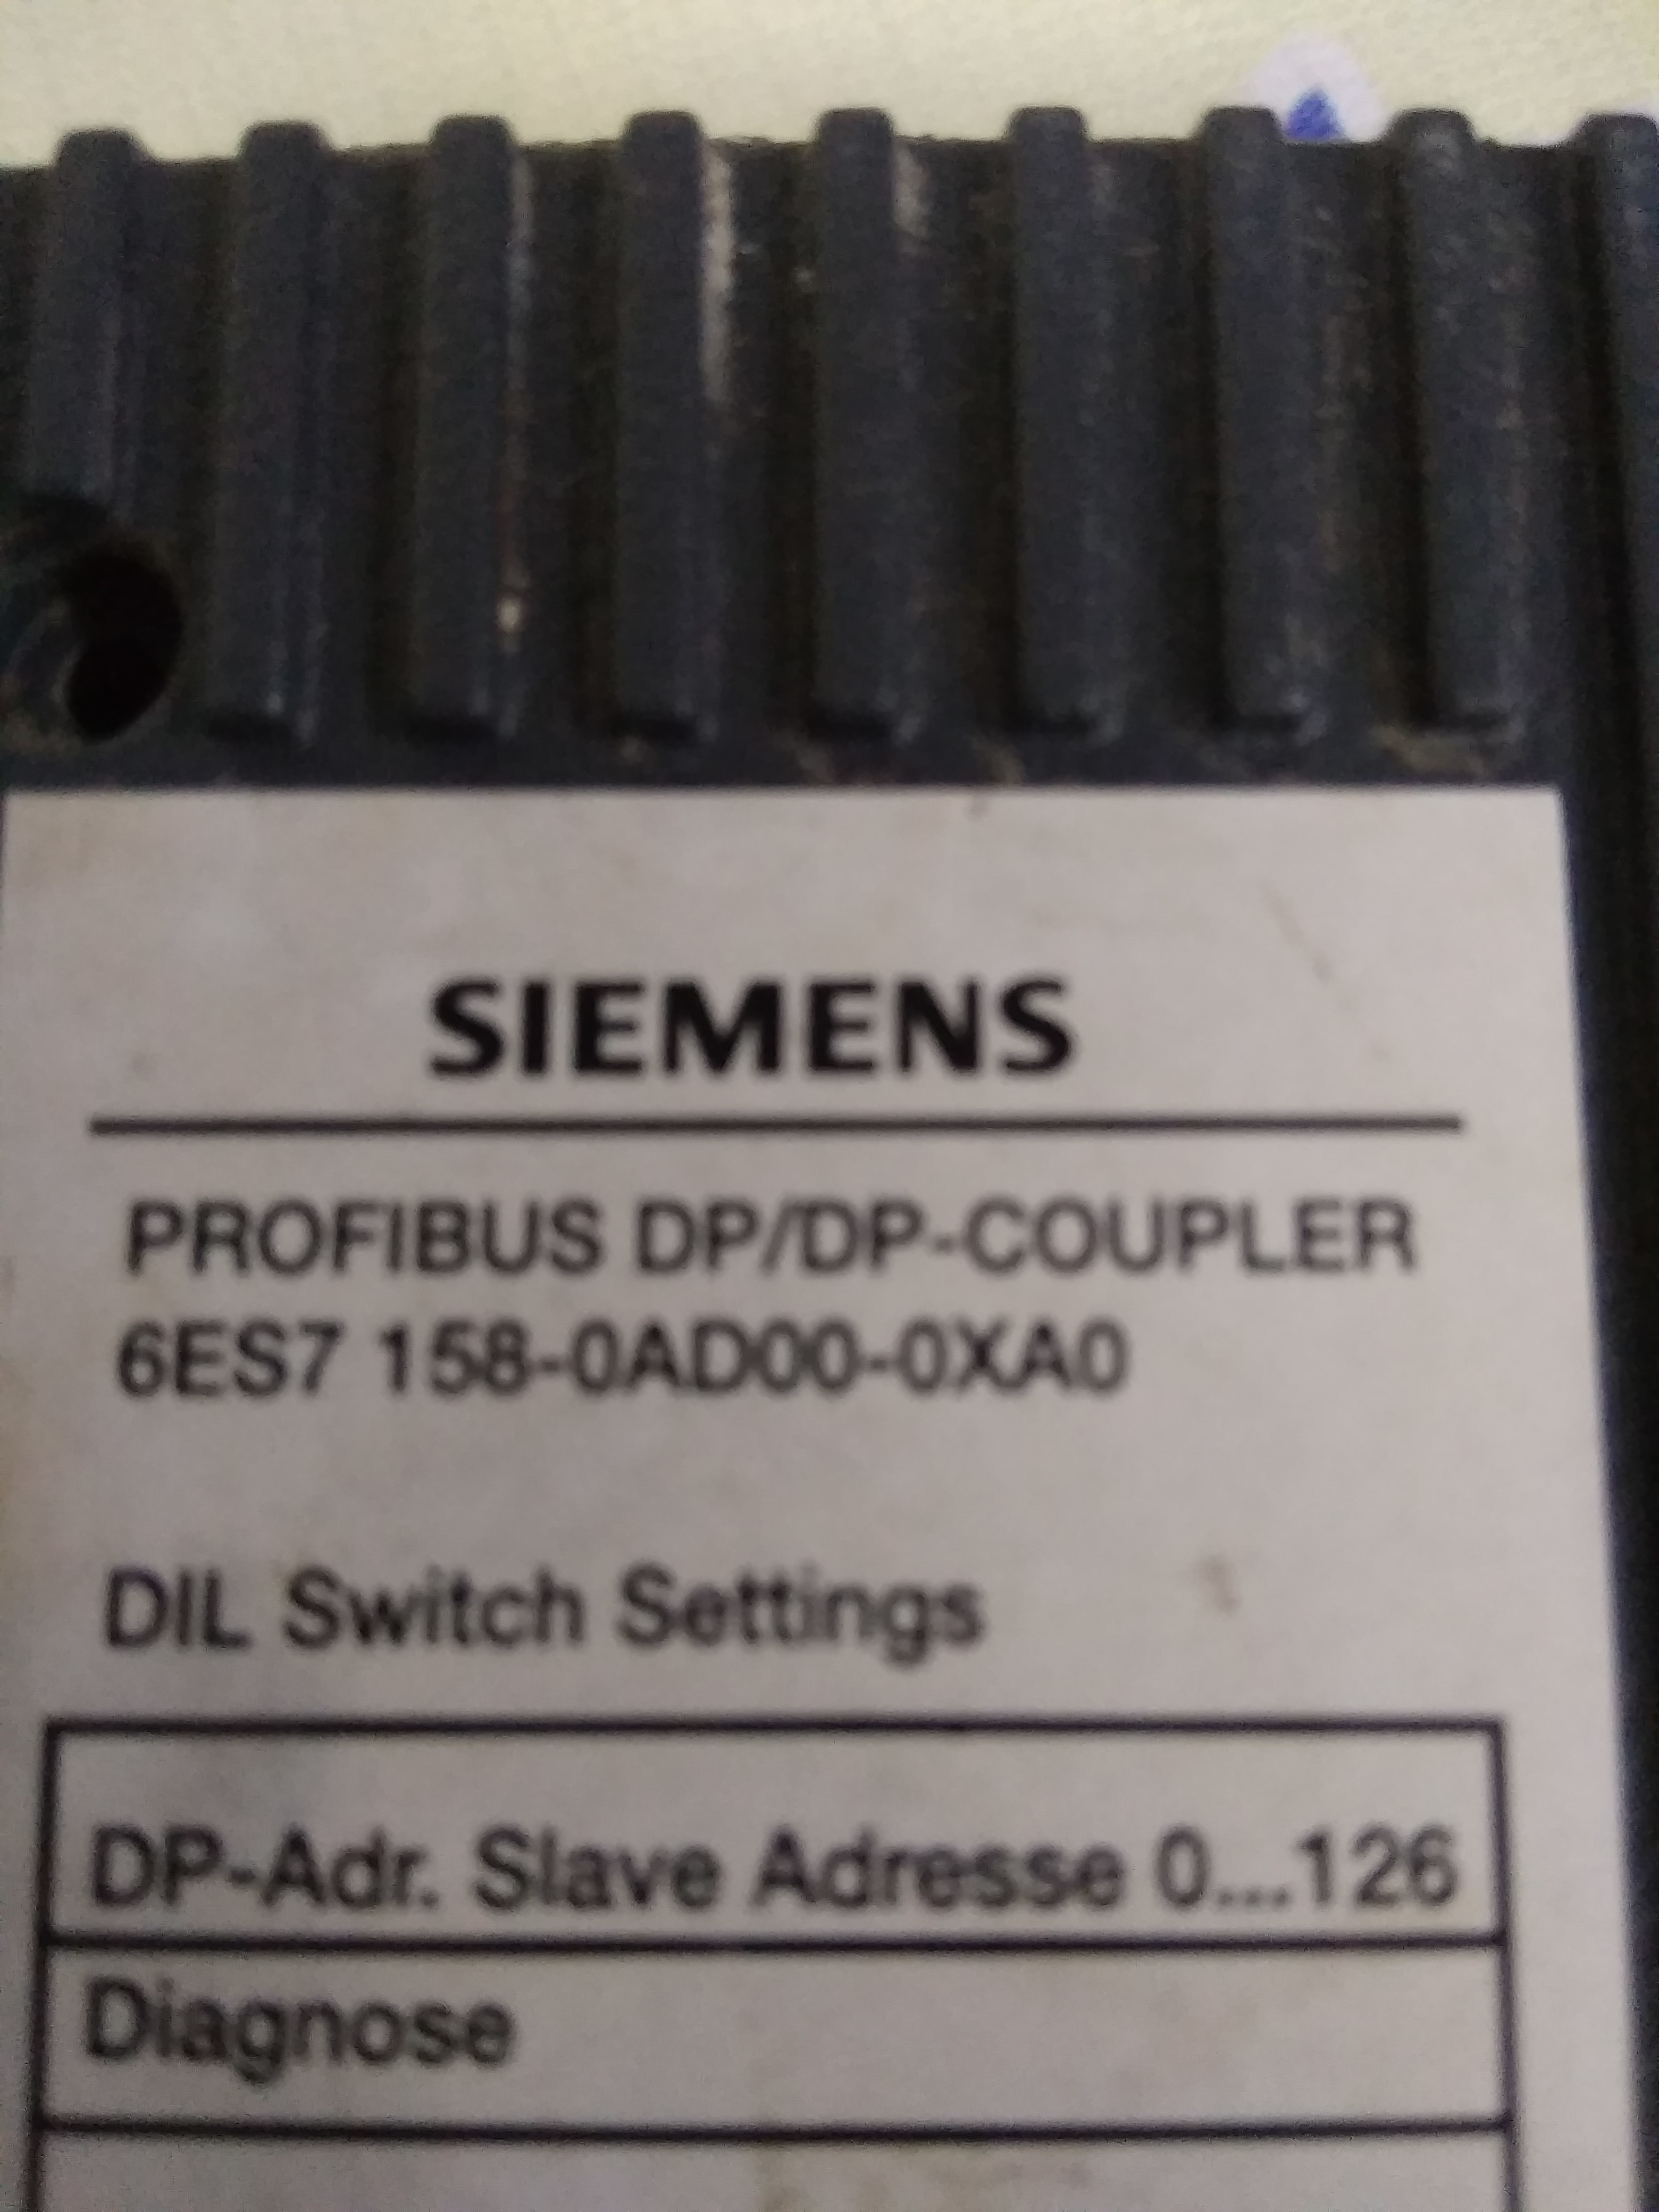 SIEMENS SIMATIC S7 PROFIBUS DP/DP-COUPLER  6ES7 158-0AD00-0XA0